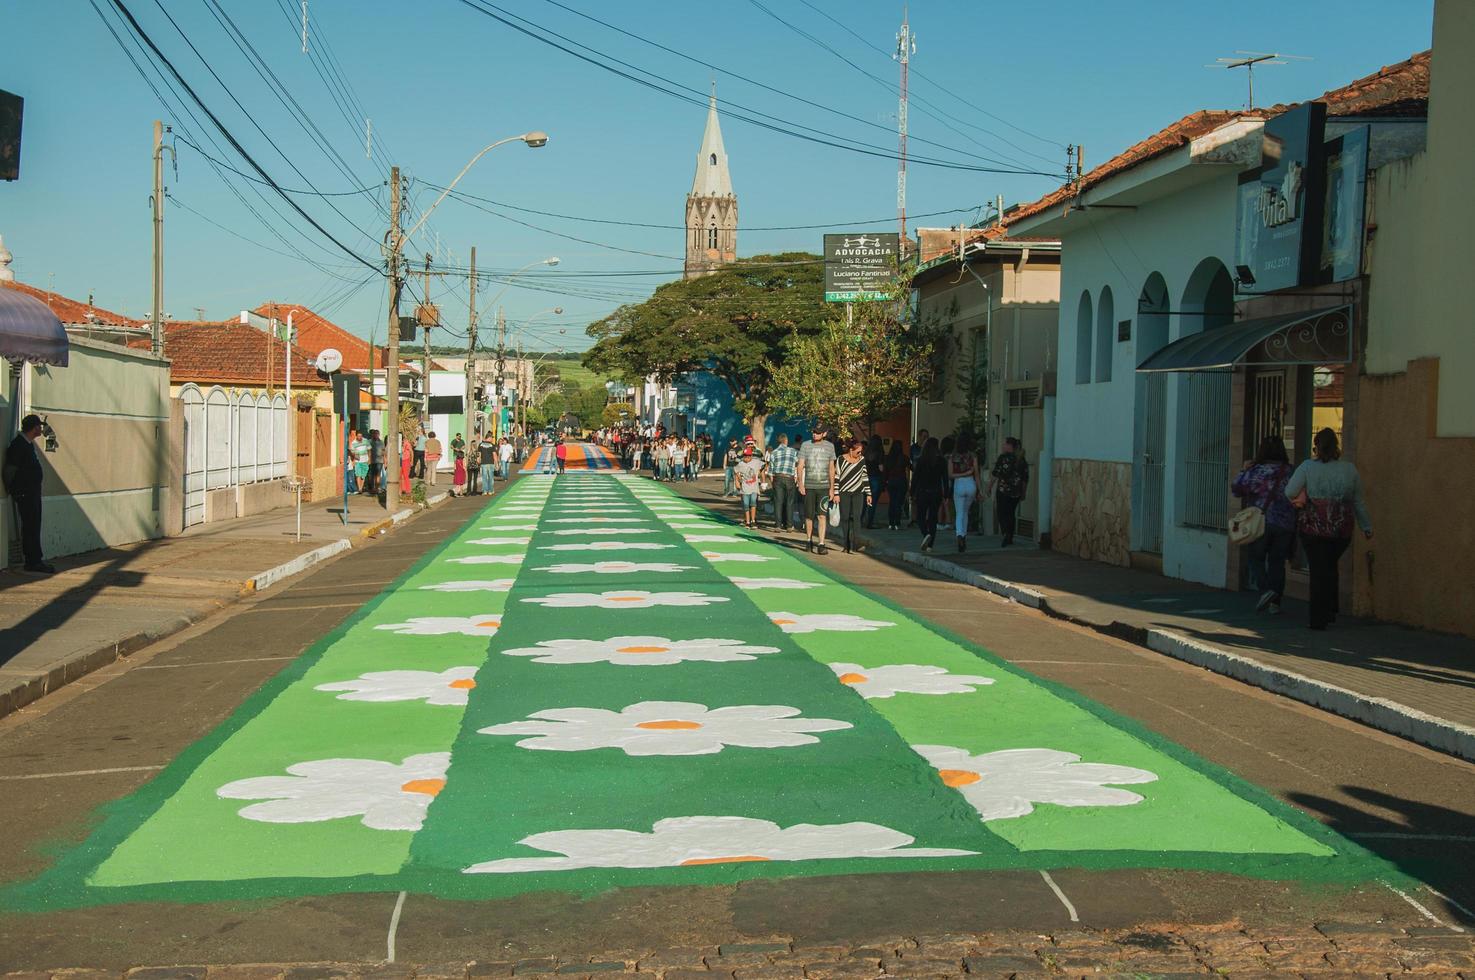 sao manuel, brasilien - 31 maj 2018. konstnärlig färgglad sandmatta gjord av hängivna för firandet av den heliga veckan på gatan i sao manuel. en liten stad på landsbygden i delstaten sao paulo. foto